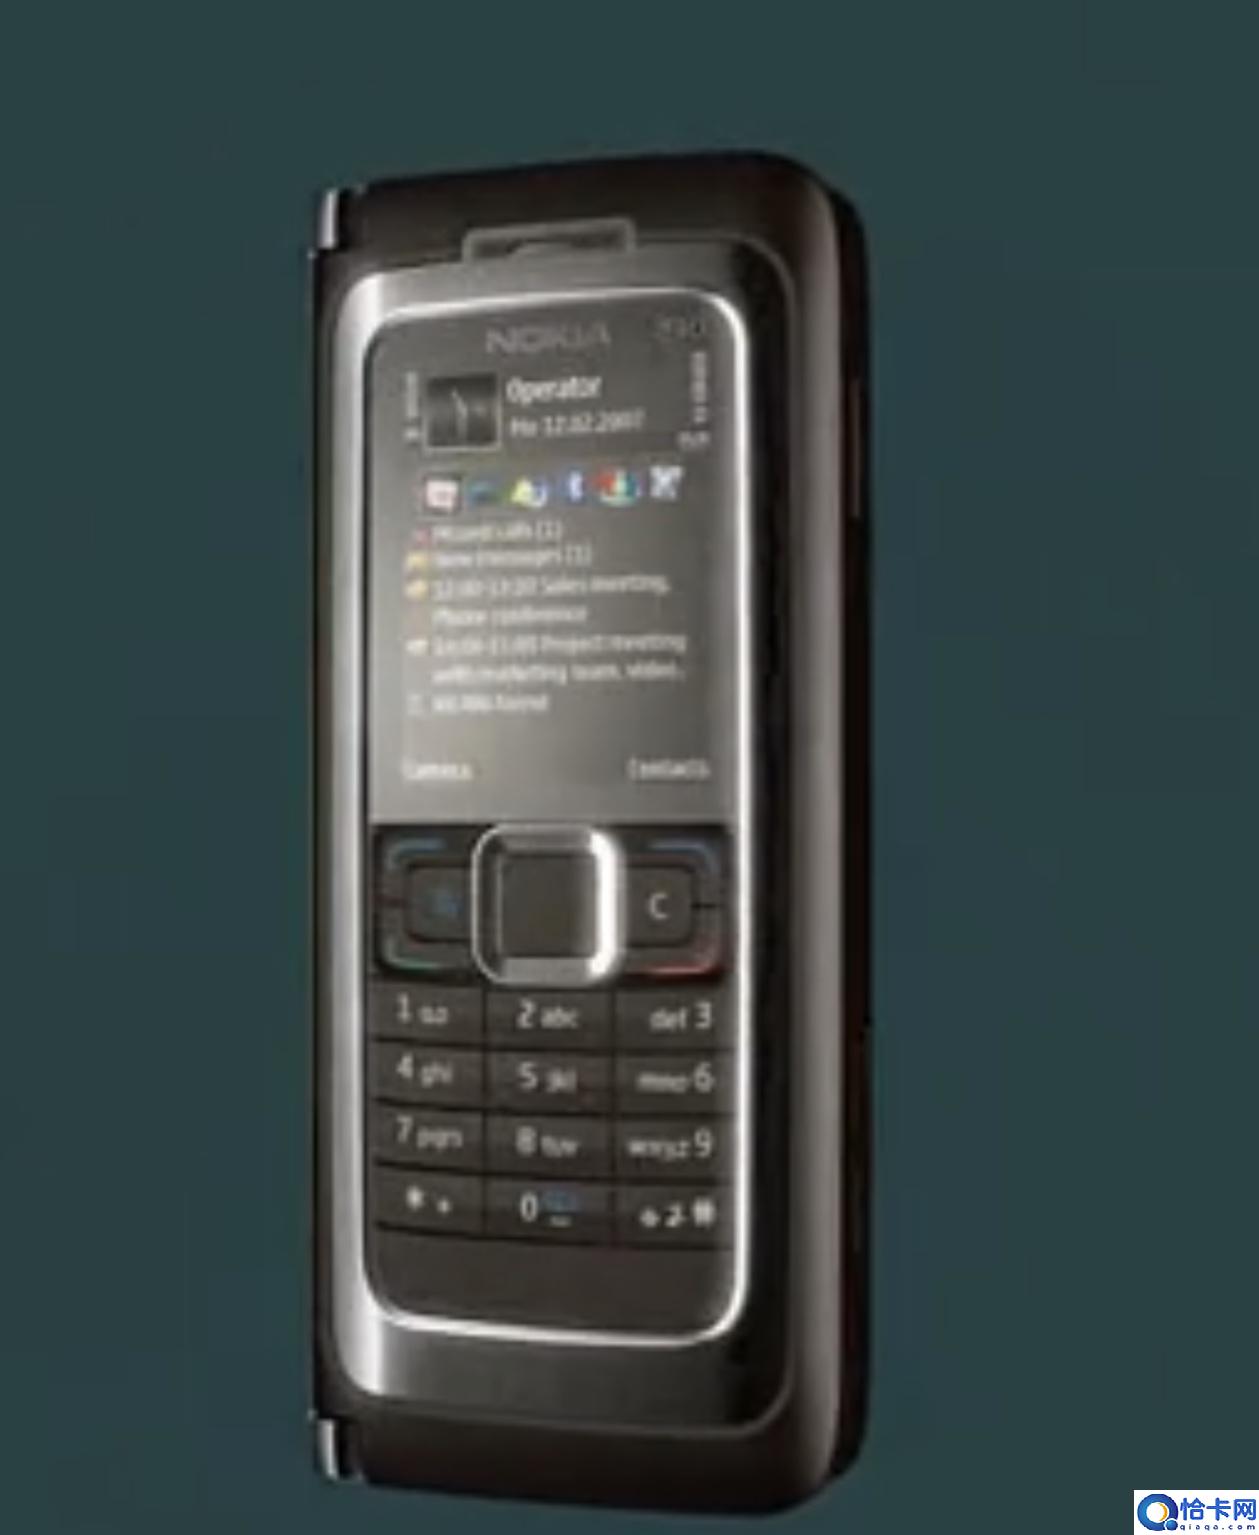 记忆中的经典商务手机-诺基亚E90